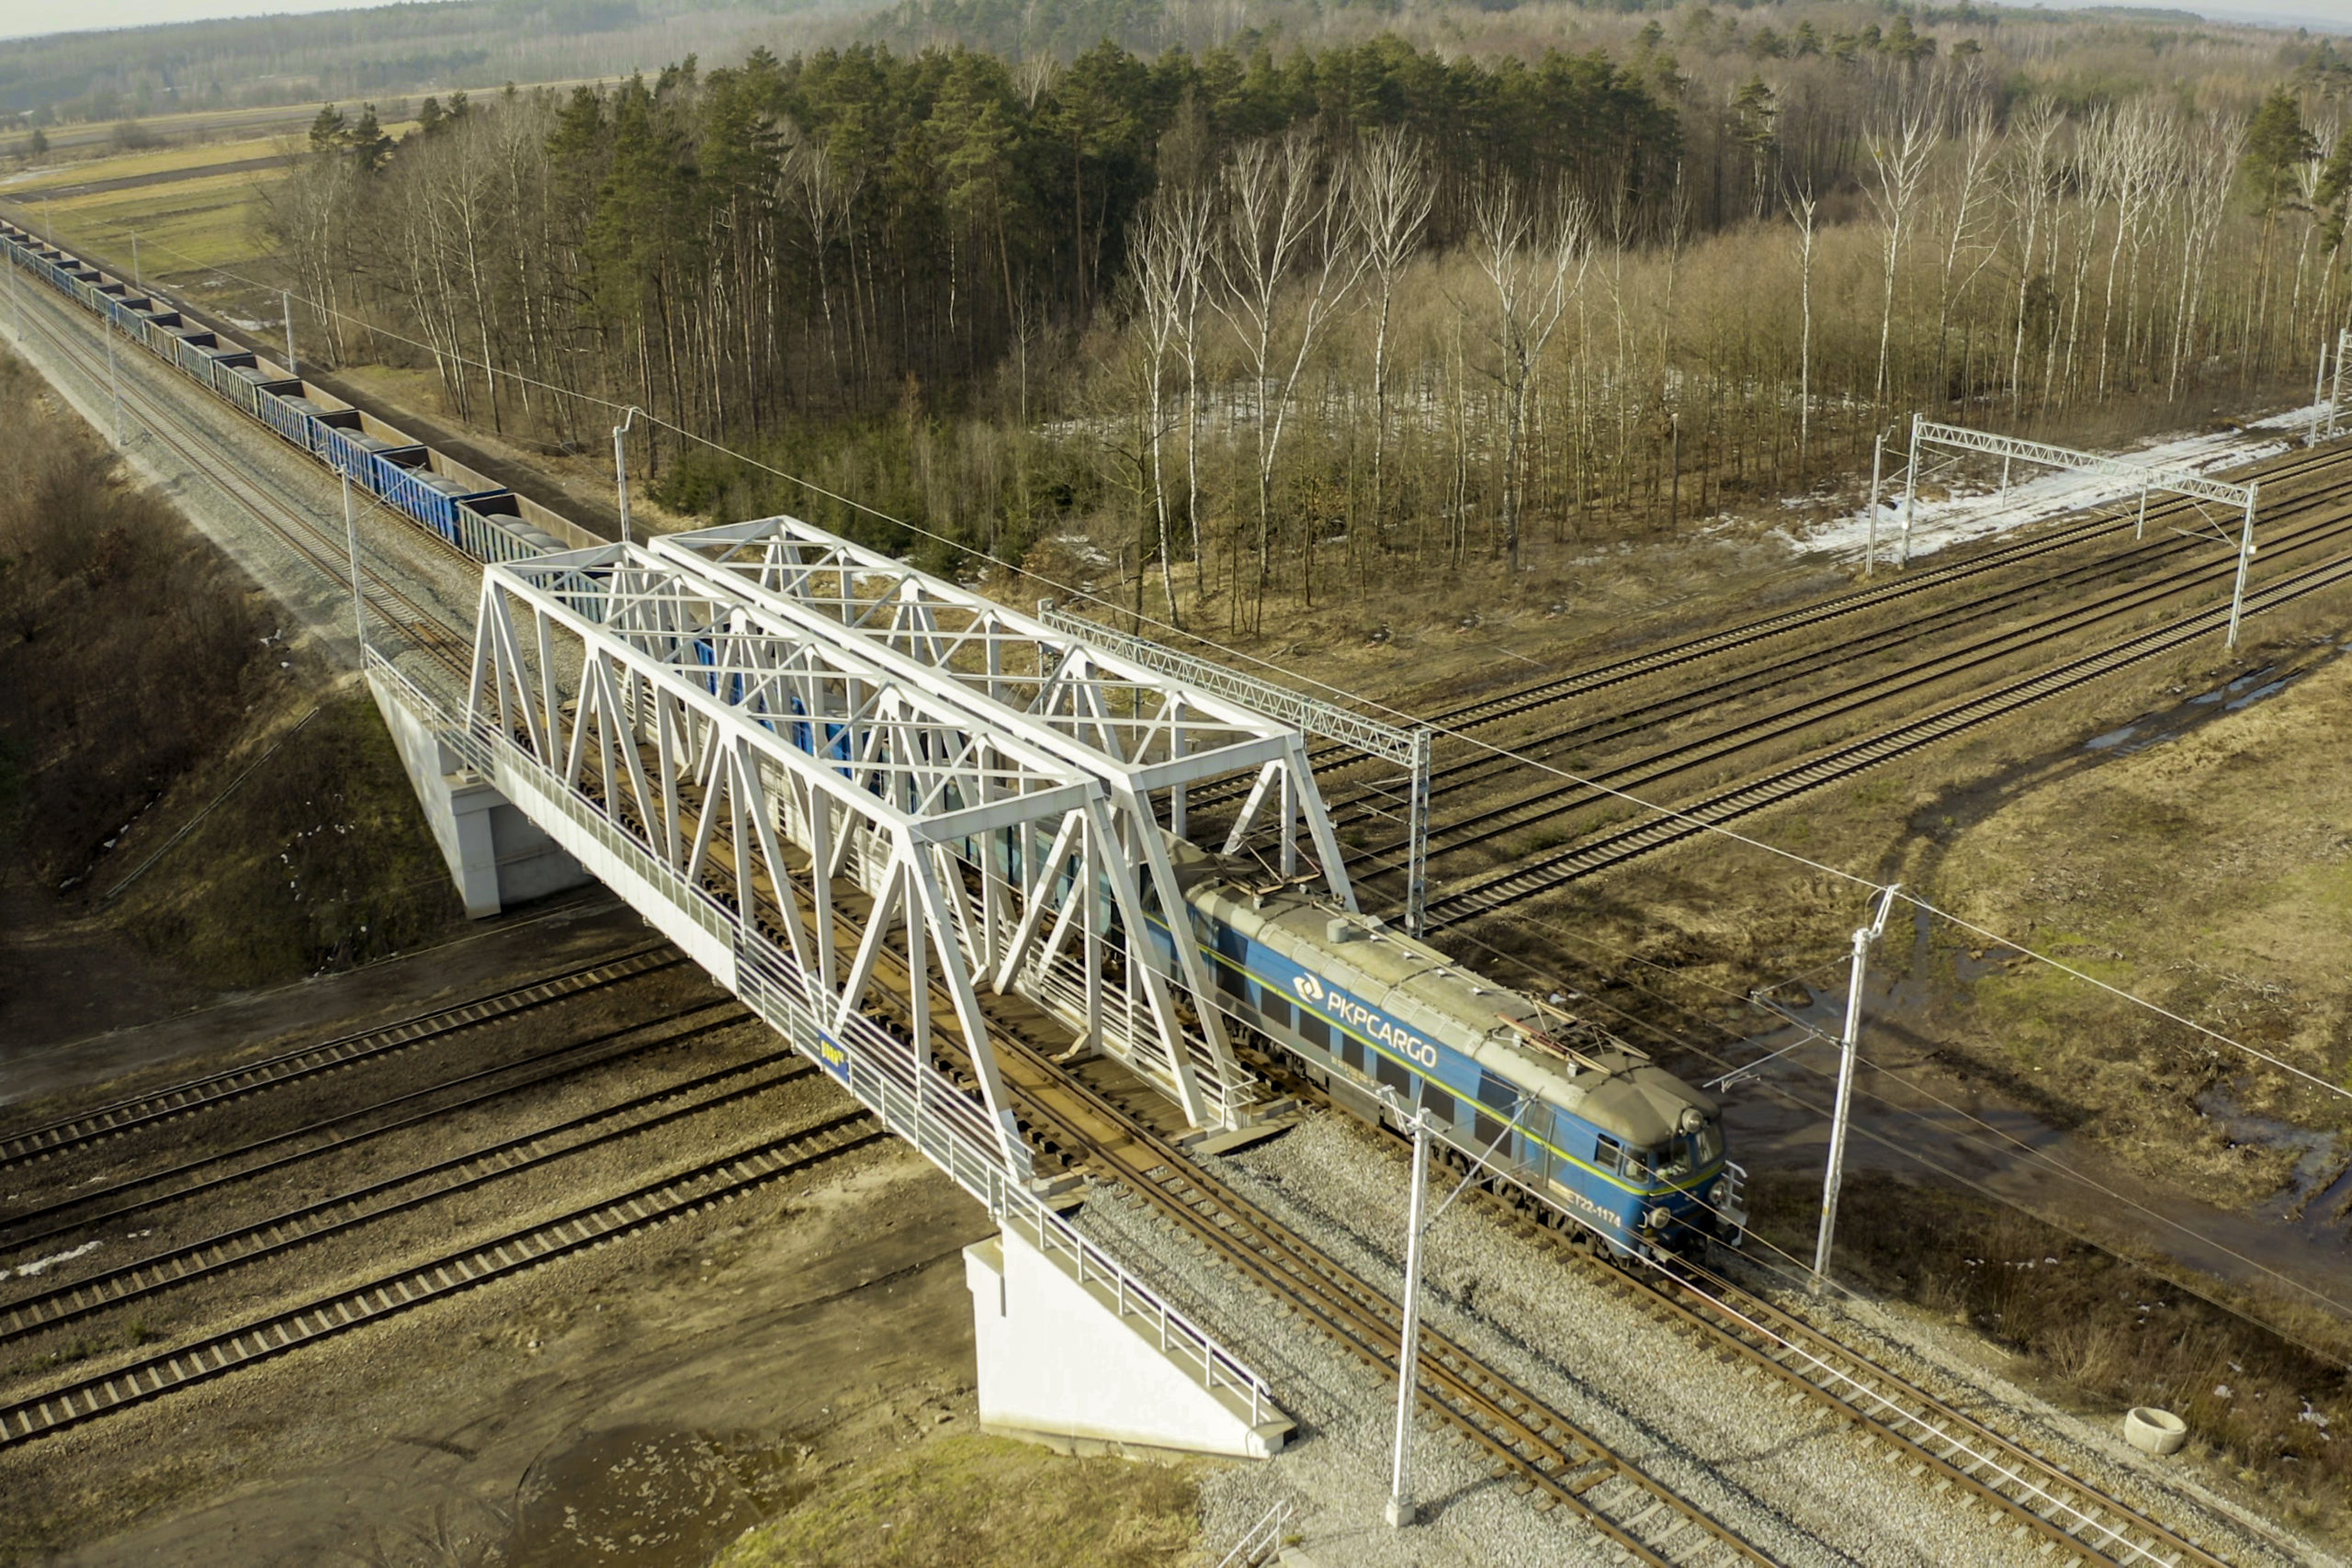 Zdjęcie: widok z góry na wiadukt kolejowo-kolejowy przez który przejeżdża pociąg.